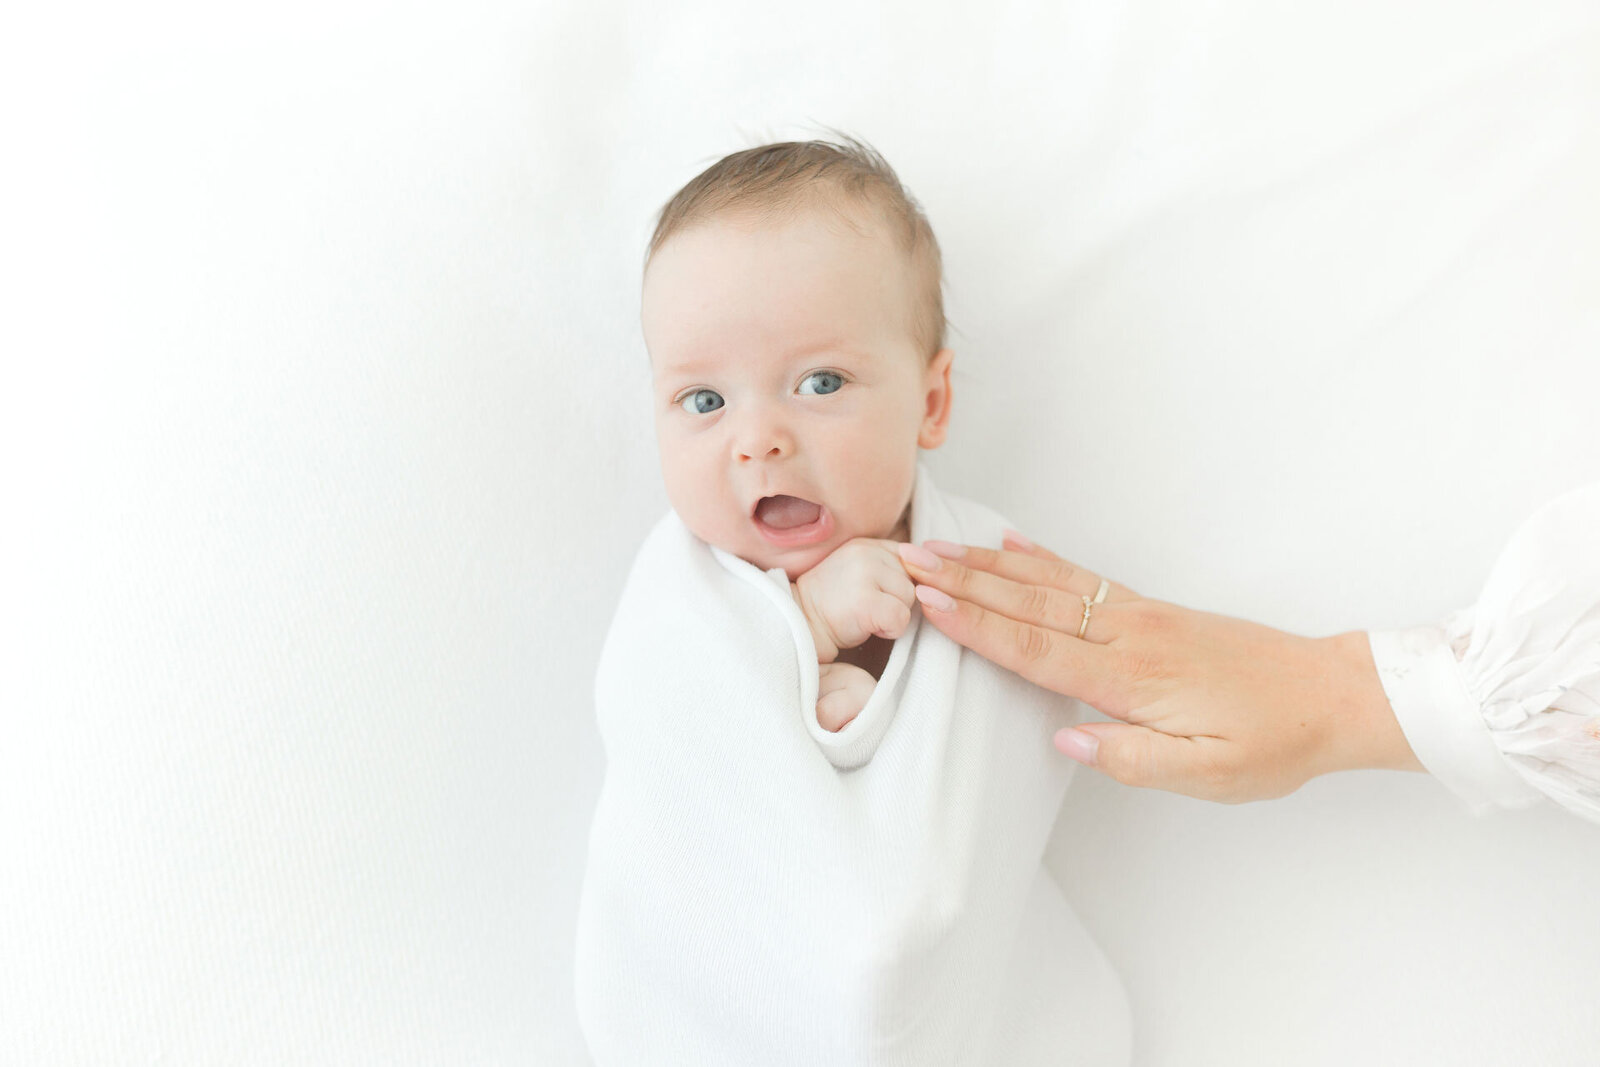 Neugeborenenfotoshooting alles in weiß mit wachem Baby.